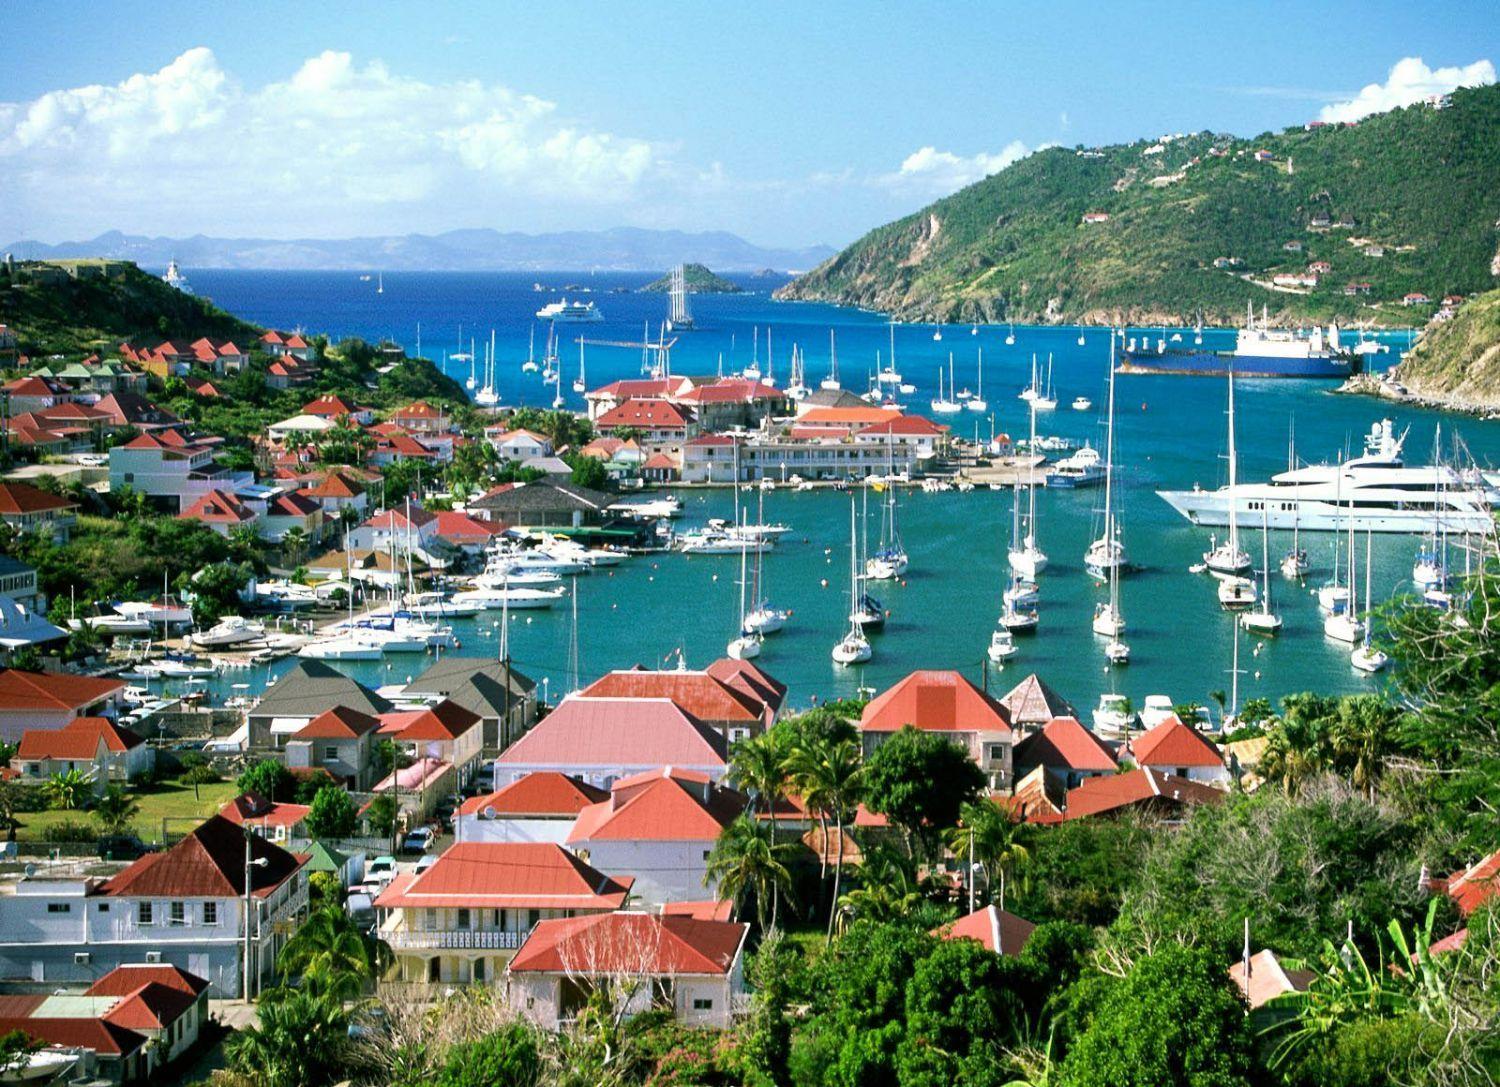 St. Martin Sint Maarten 2021 Travel Guide, Bars, & Events